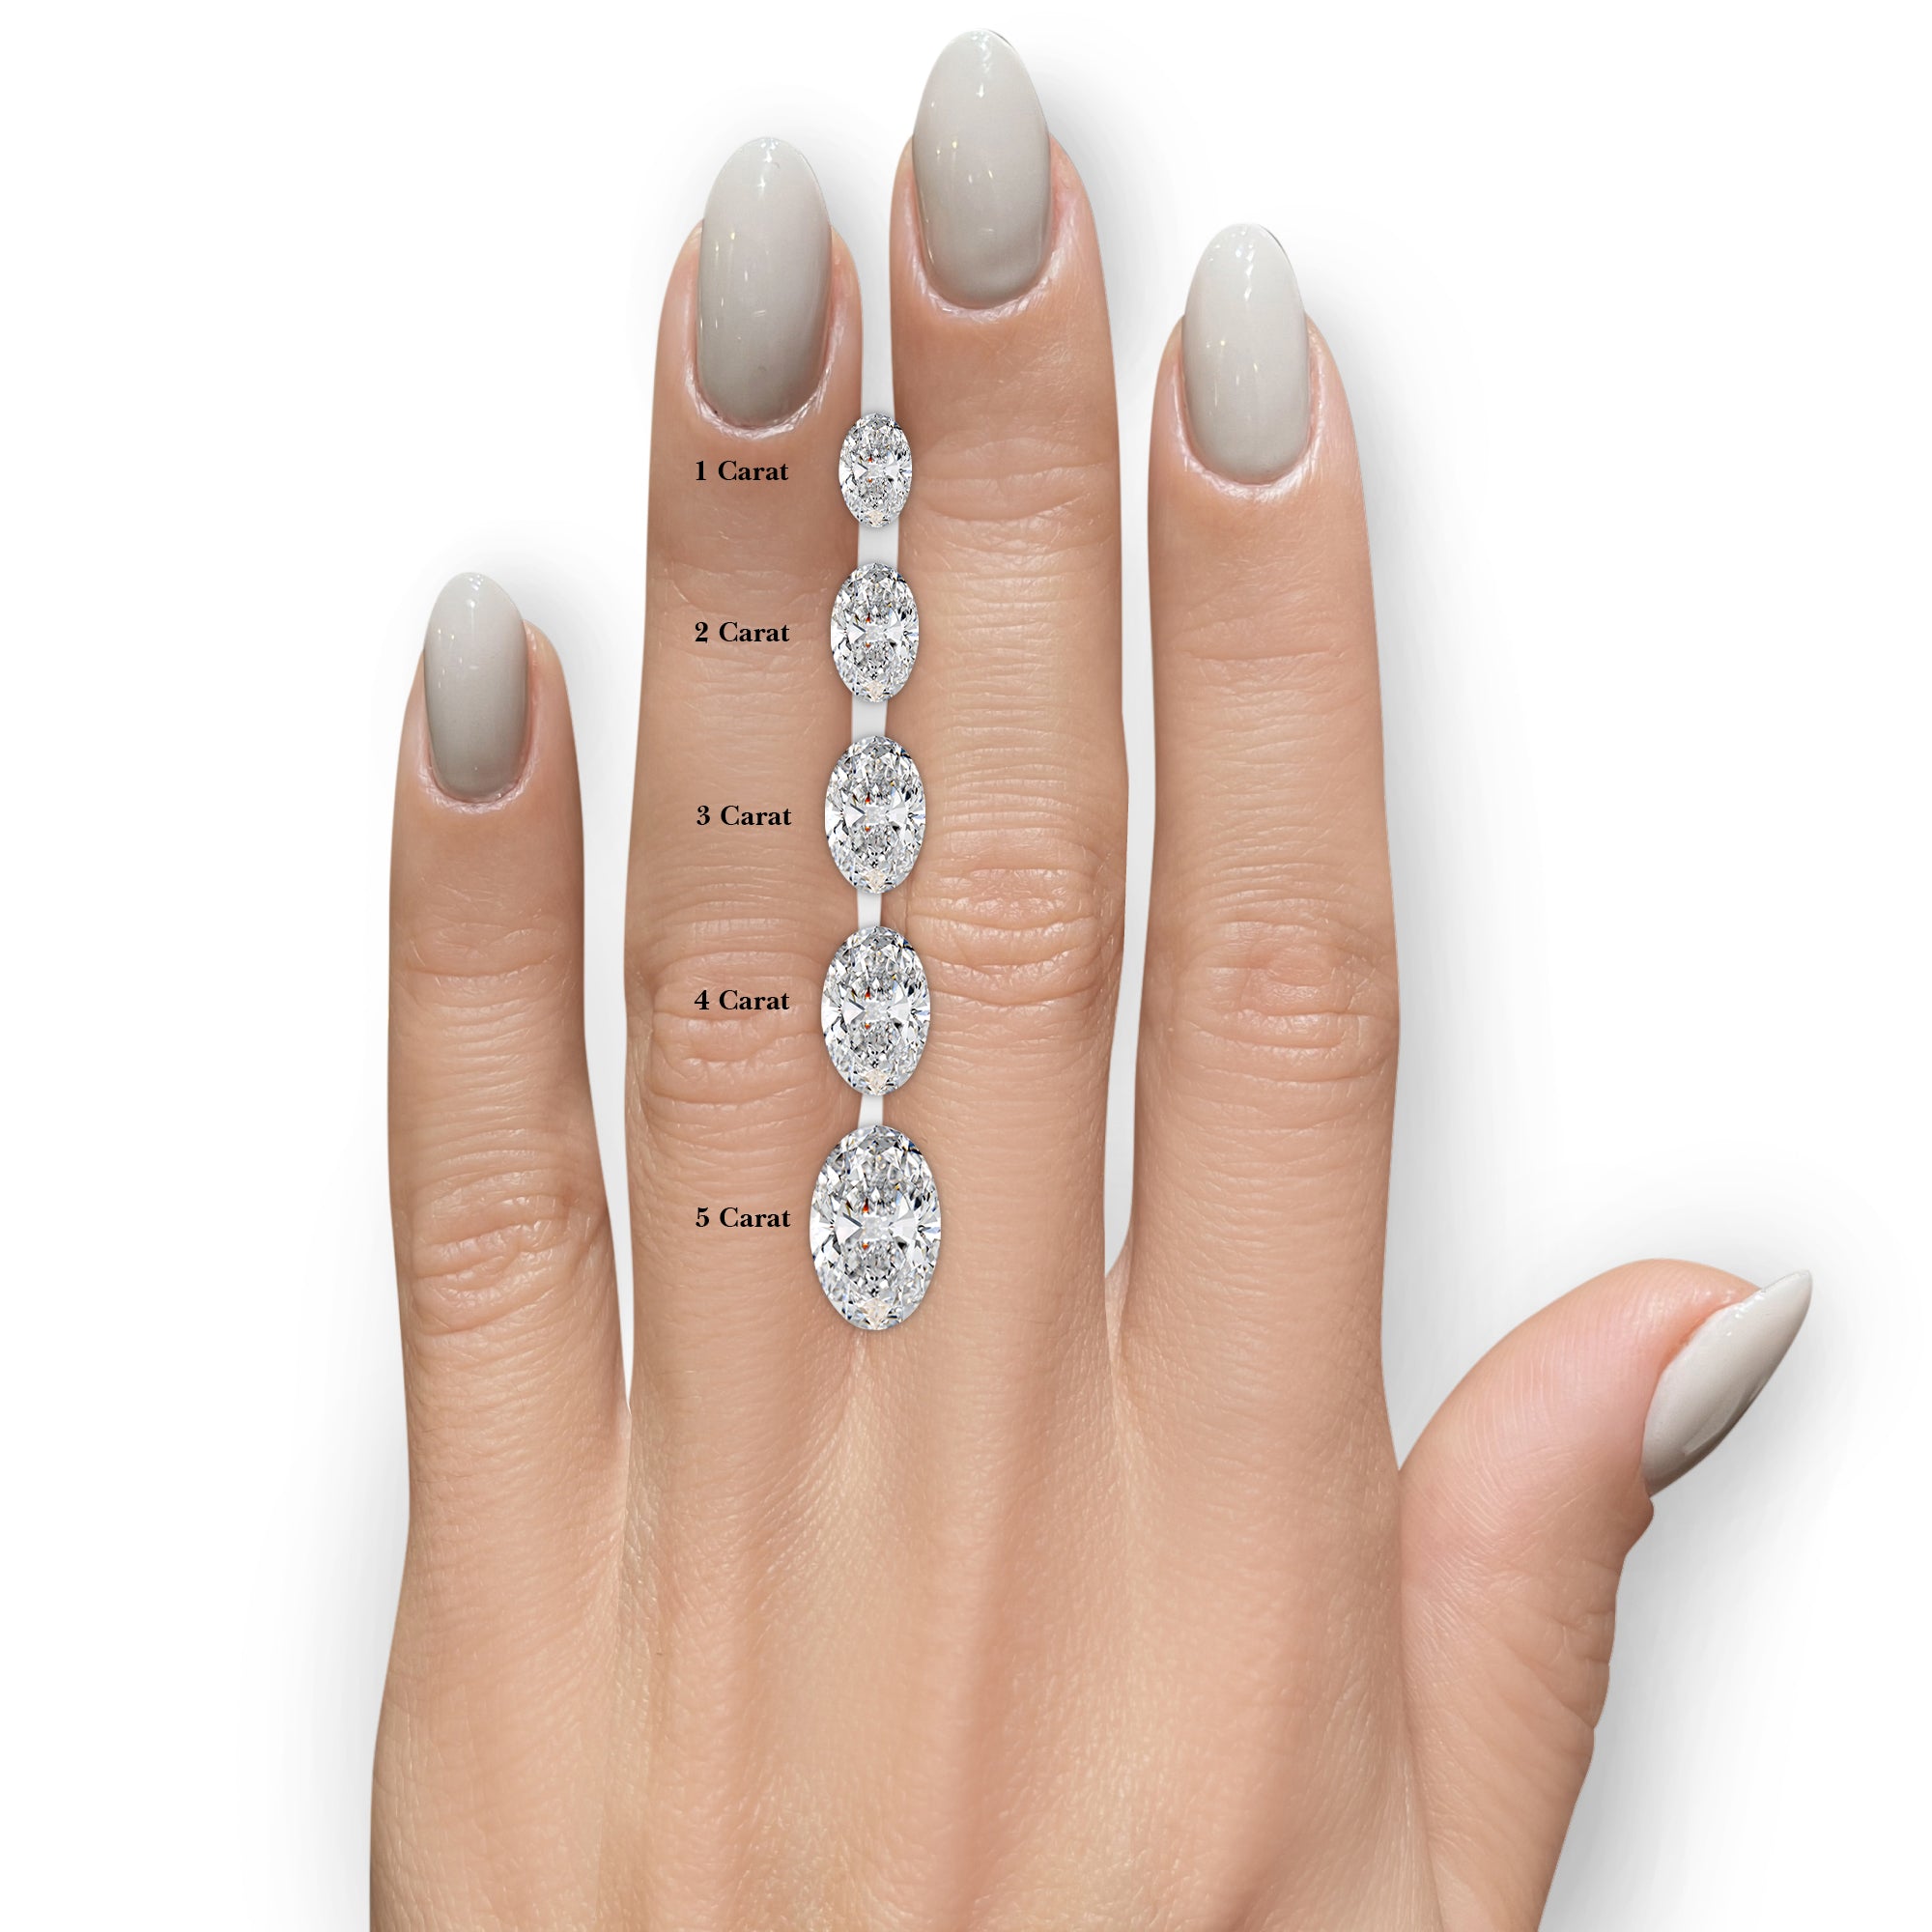 Giselle Diamond Engagement Ring -18K White Gold